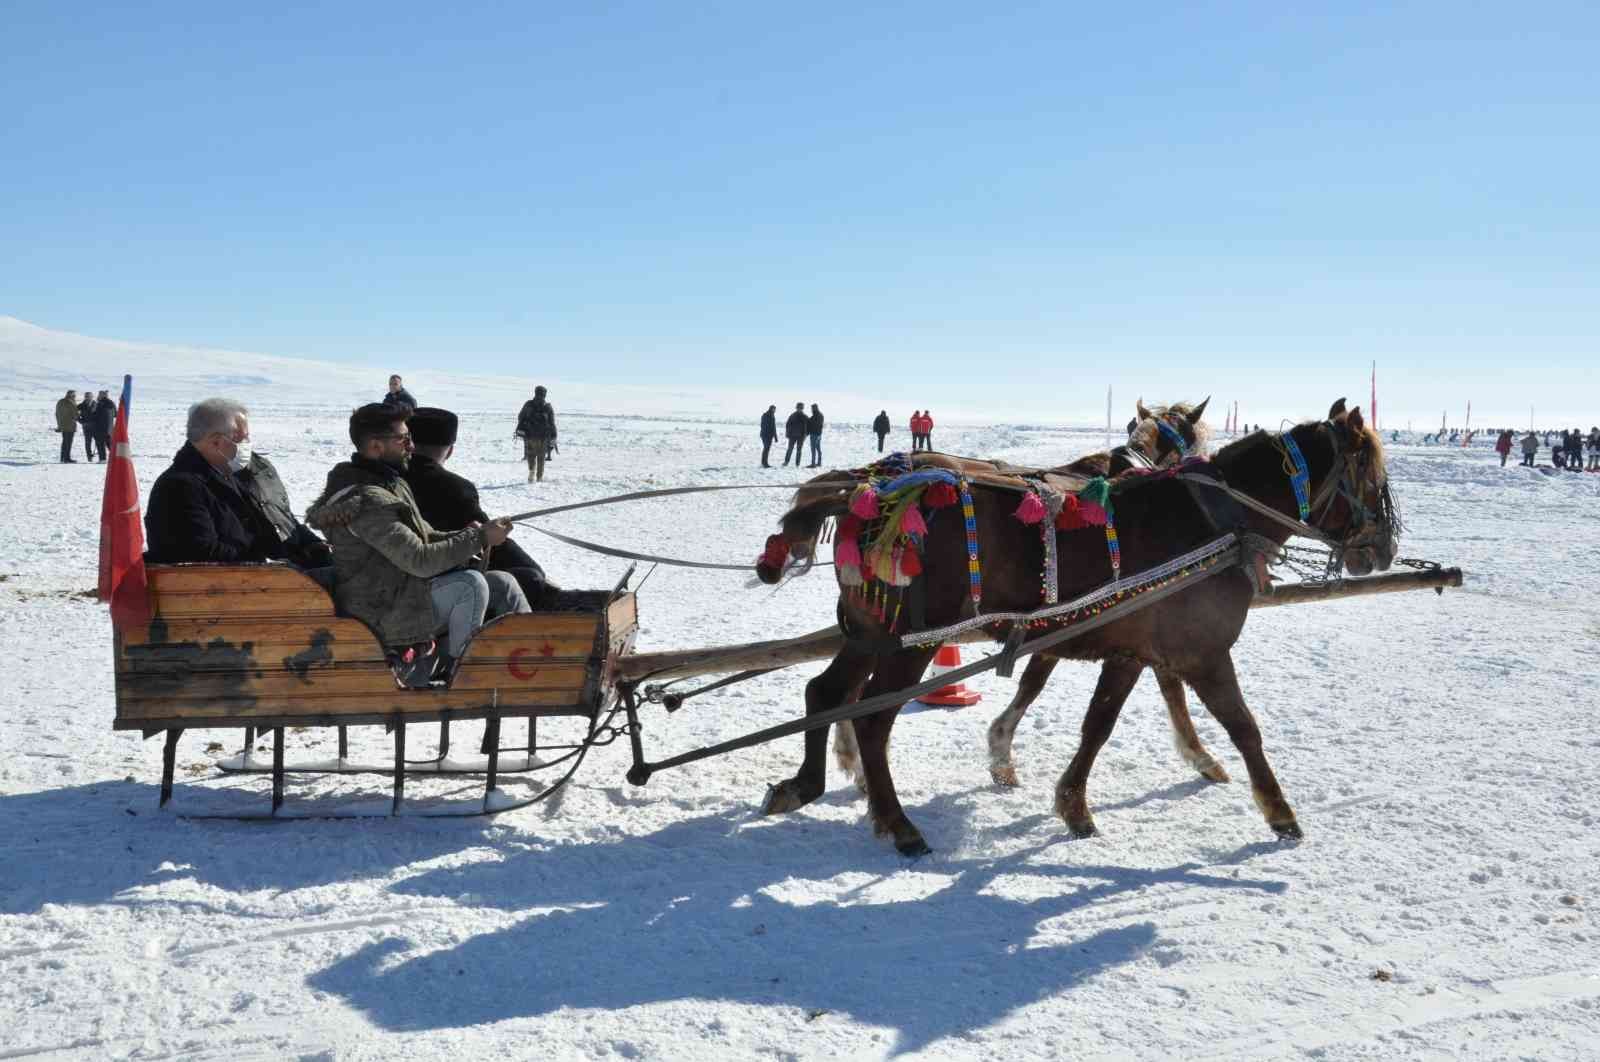 Çıldır Gölü Kars ve Ardahan ekonomisine önemli katkı sağlıyor #kars